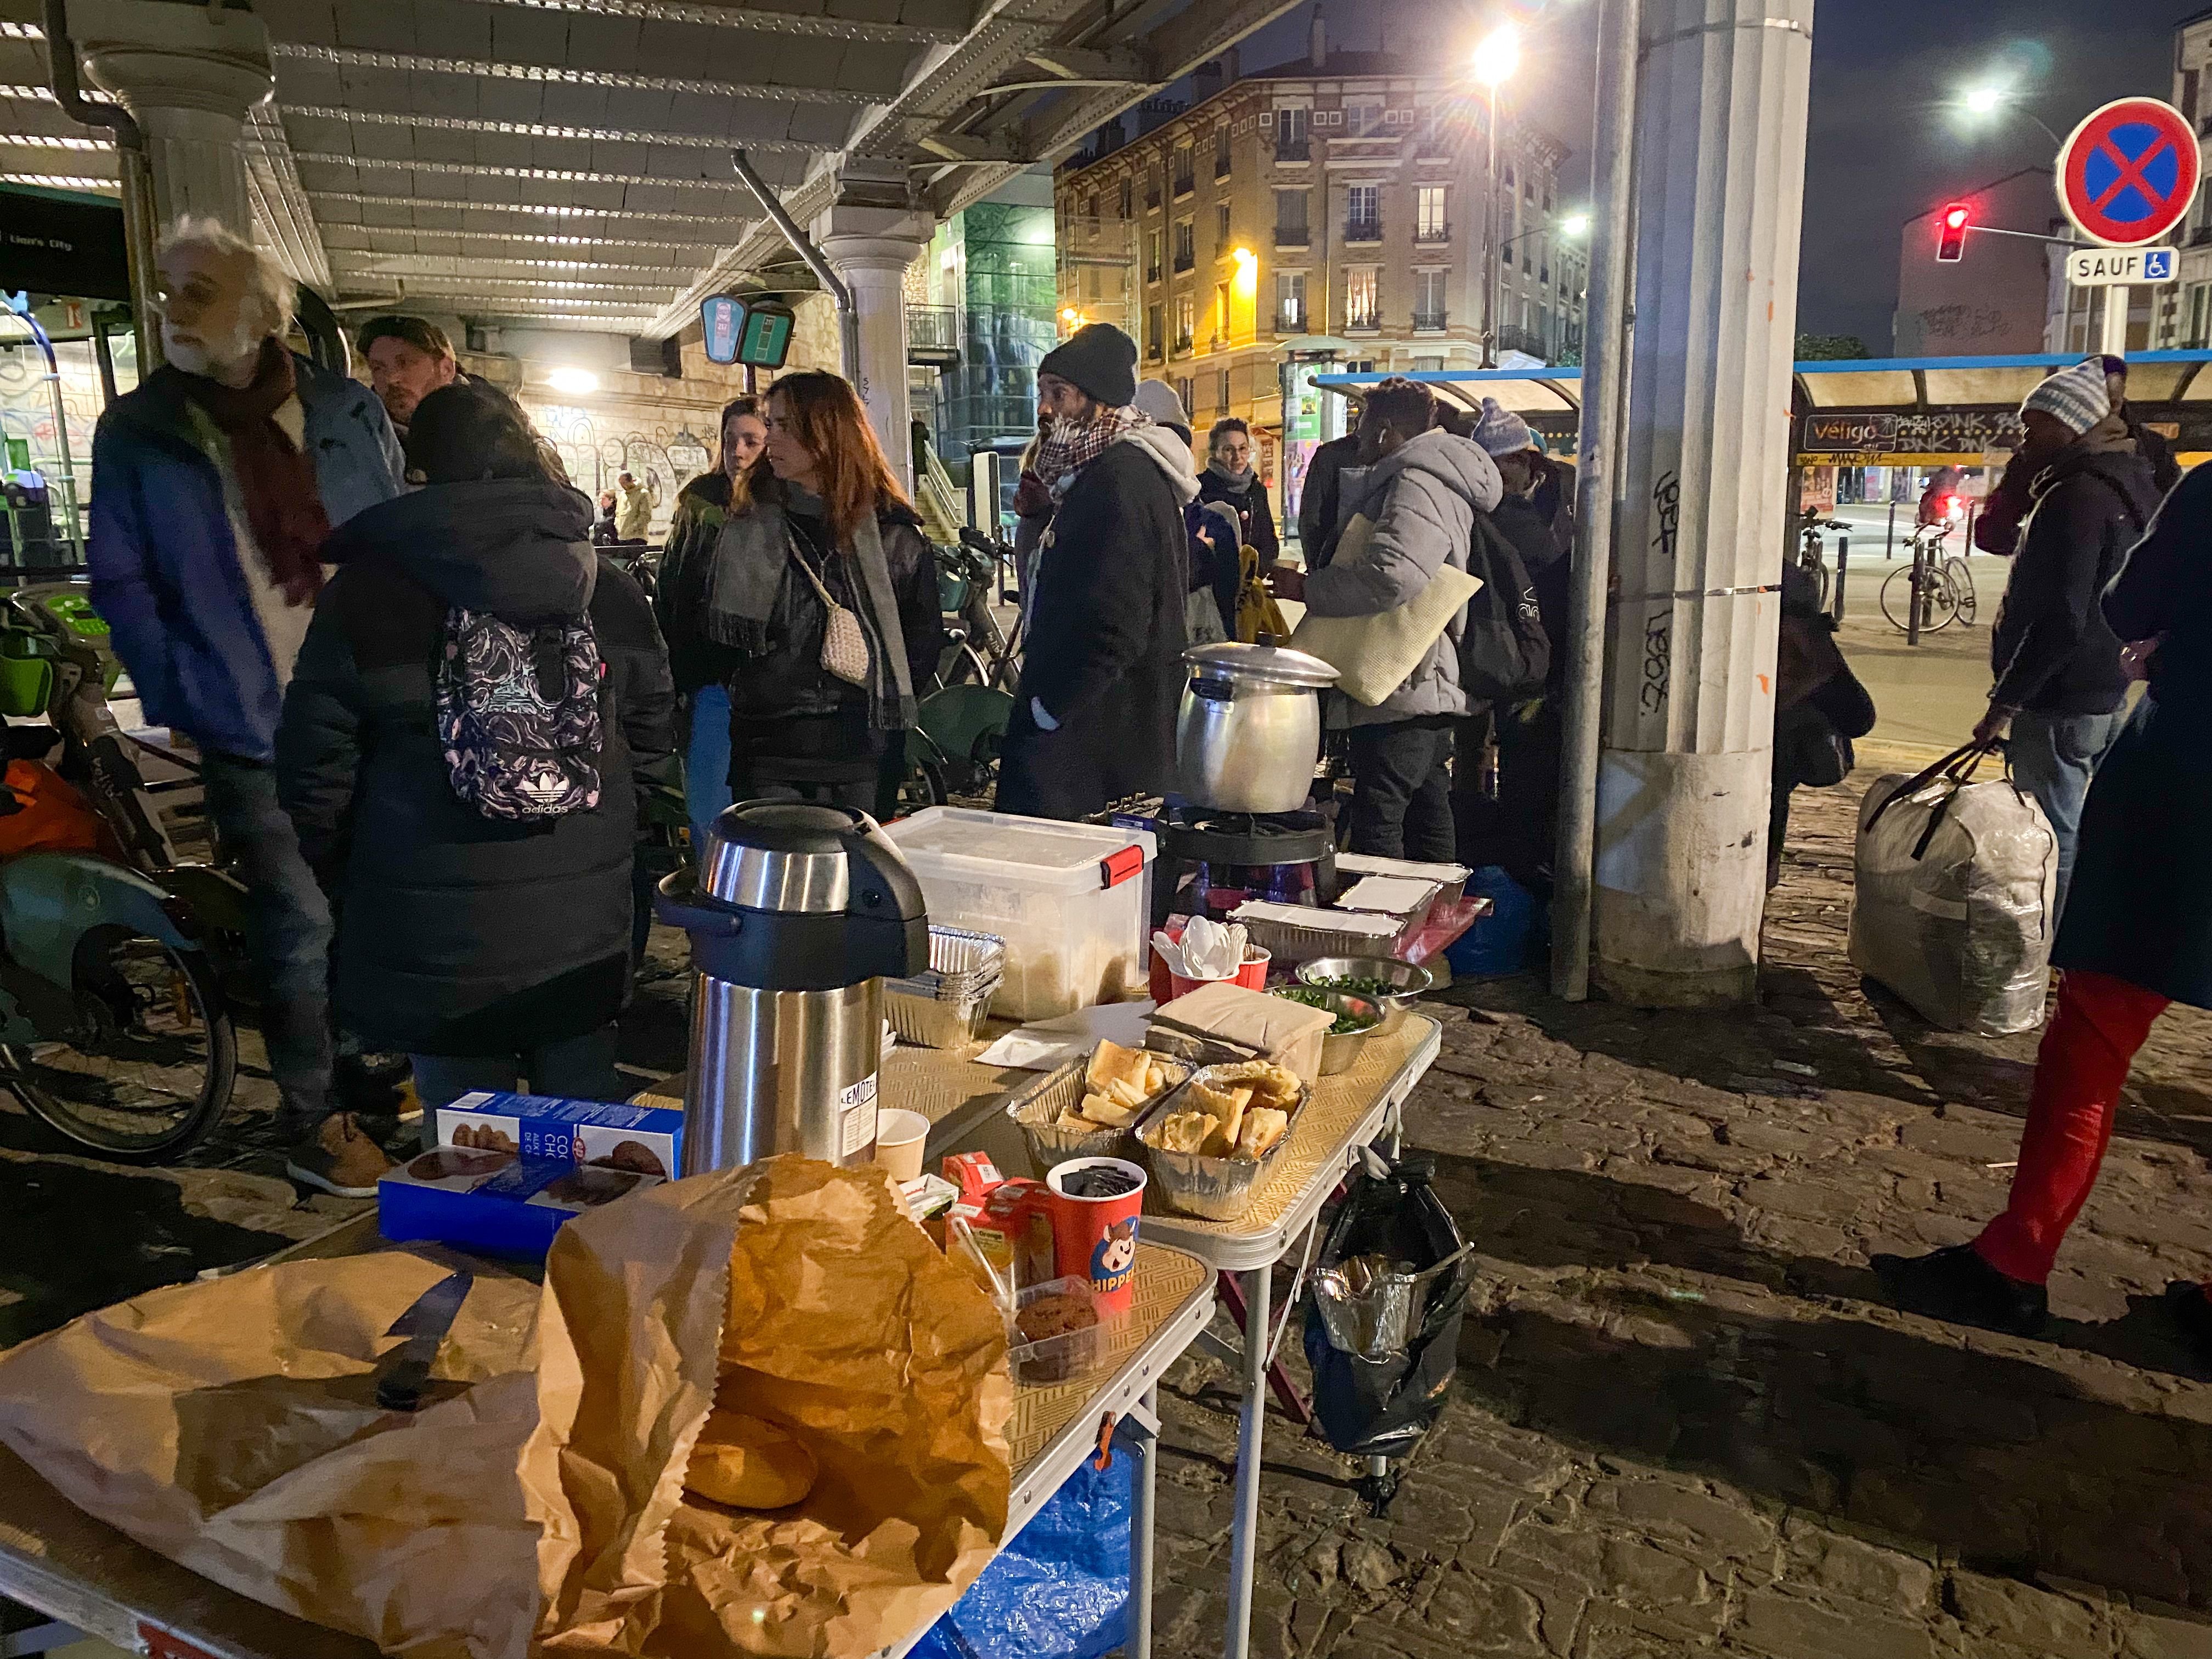 Vitry-sur-Seine, mardi 23 avril. Les membres du Collectif solidaire de Vitry 94 organisent leur deuxième distribution de repas chauds pour les migrants expulsés du squat la semaine précédente. LP/Marion Sillion